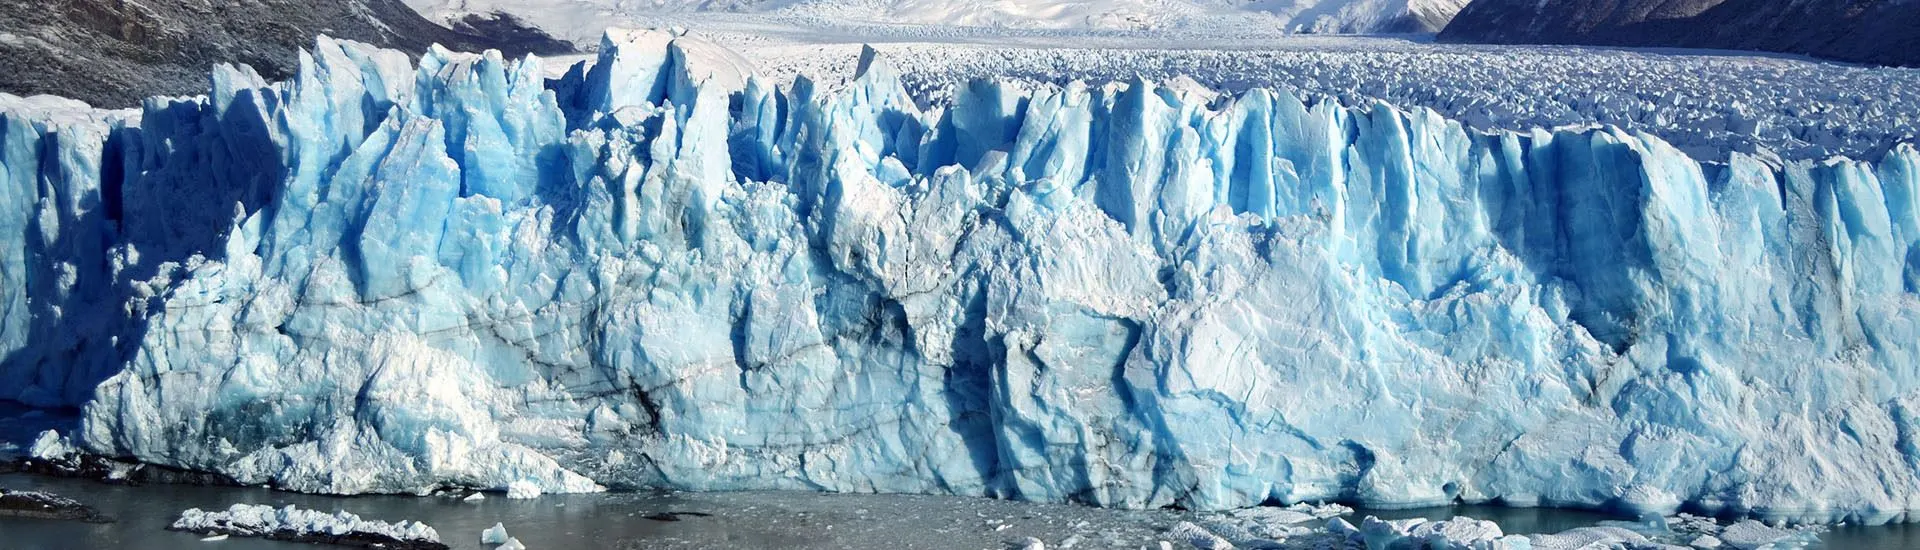 Perito Moreno Glacier in Calafate, Argentina